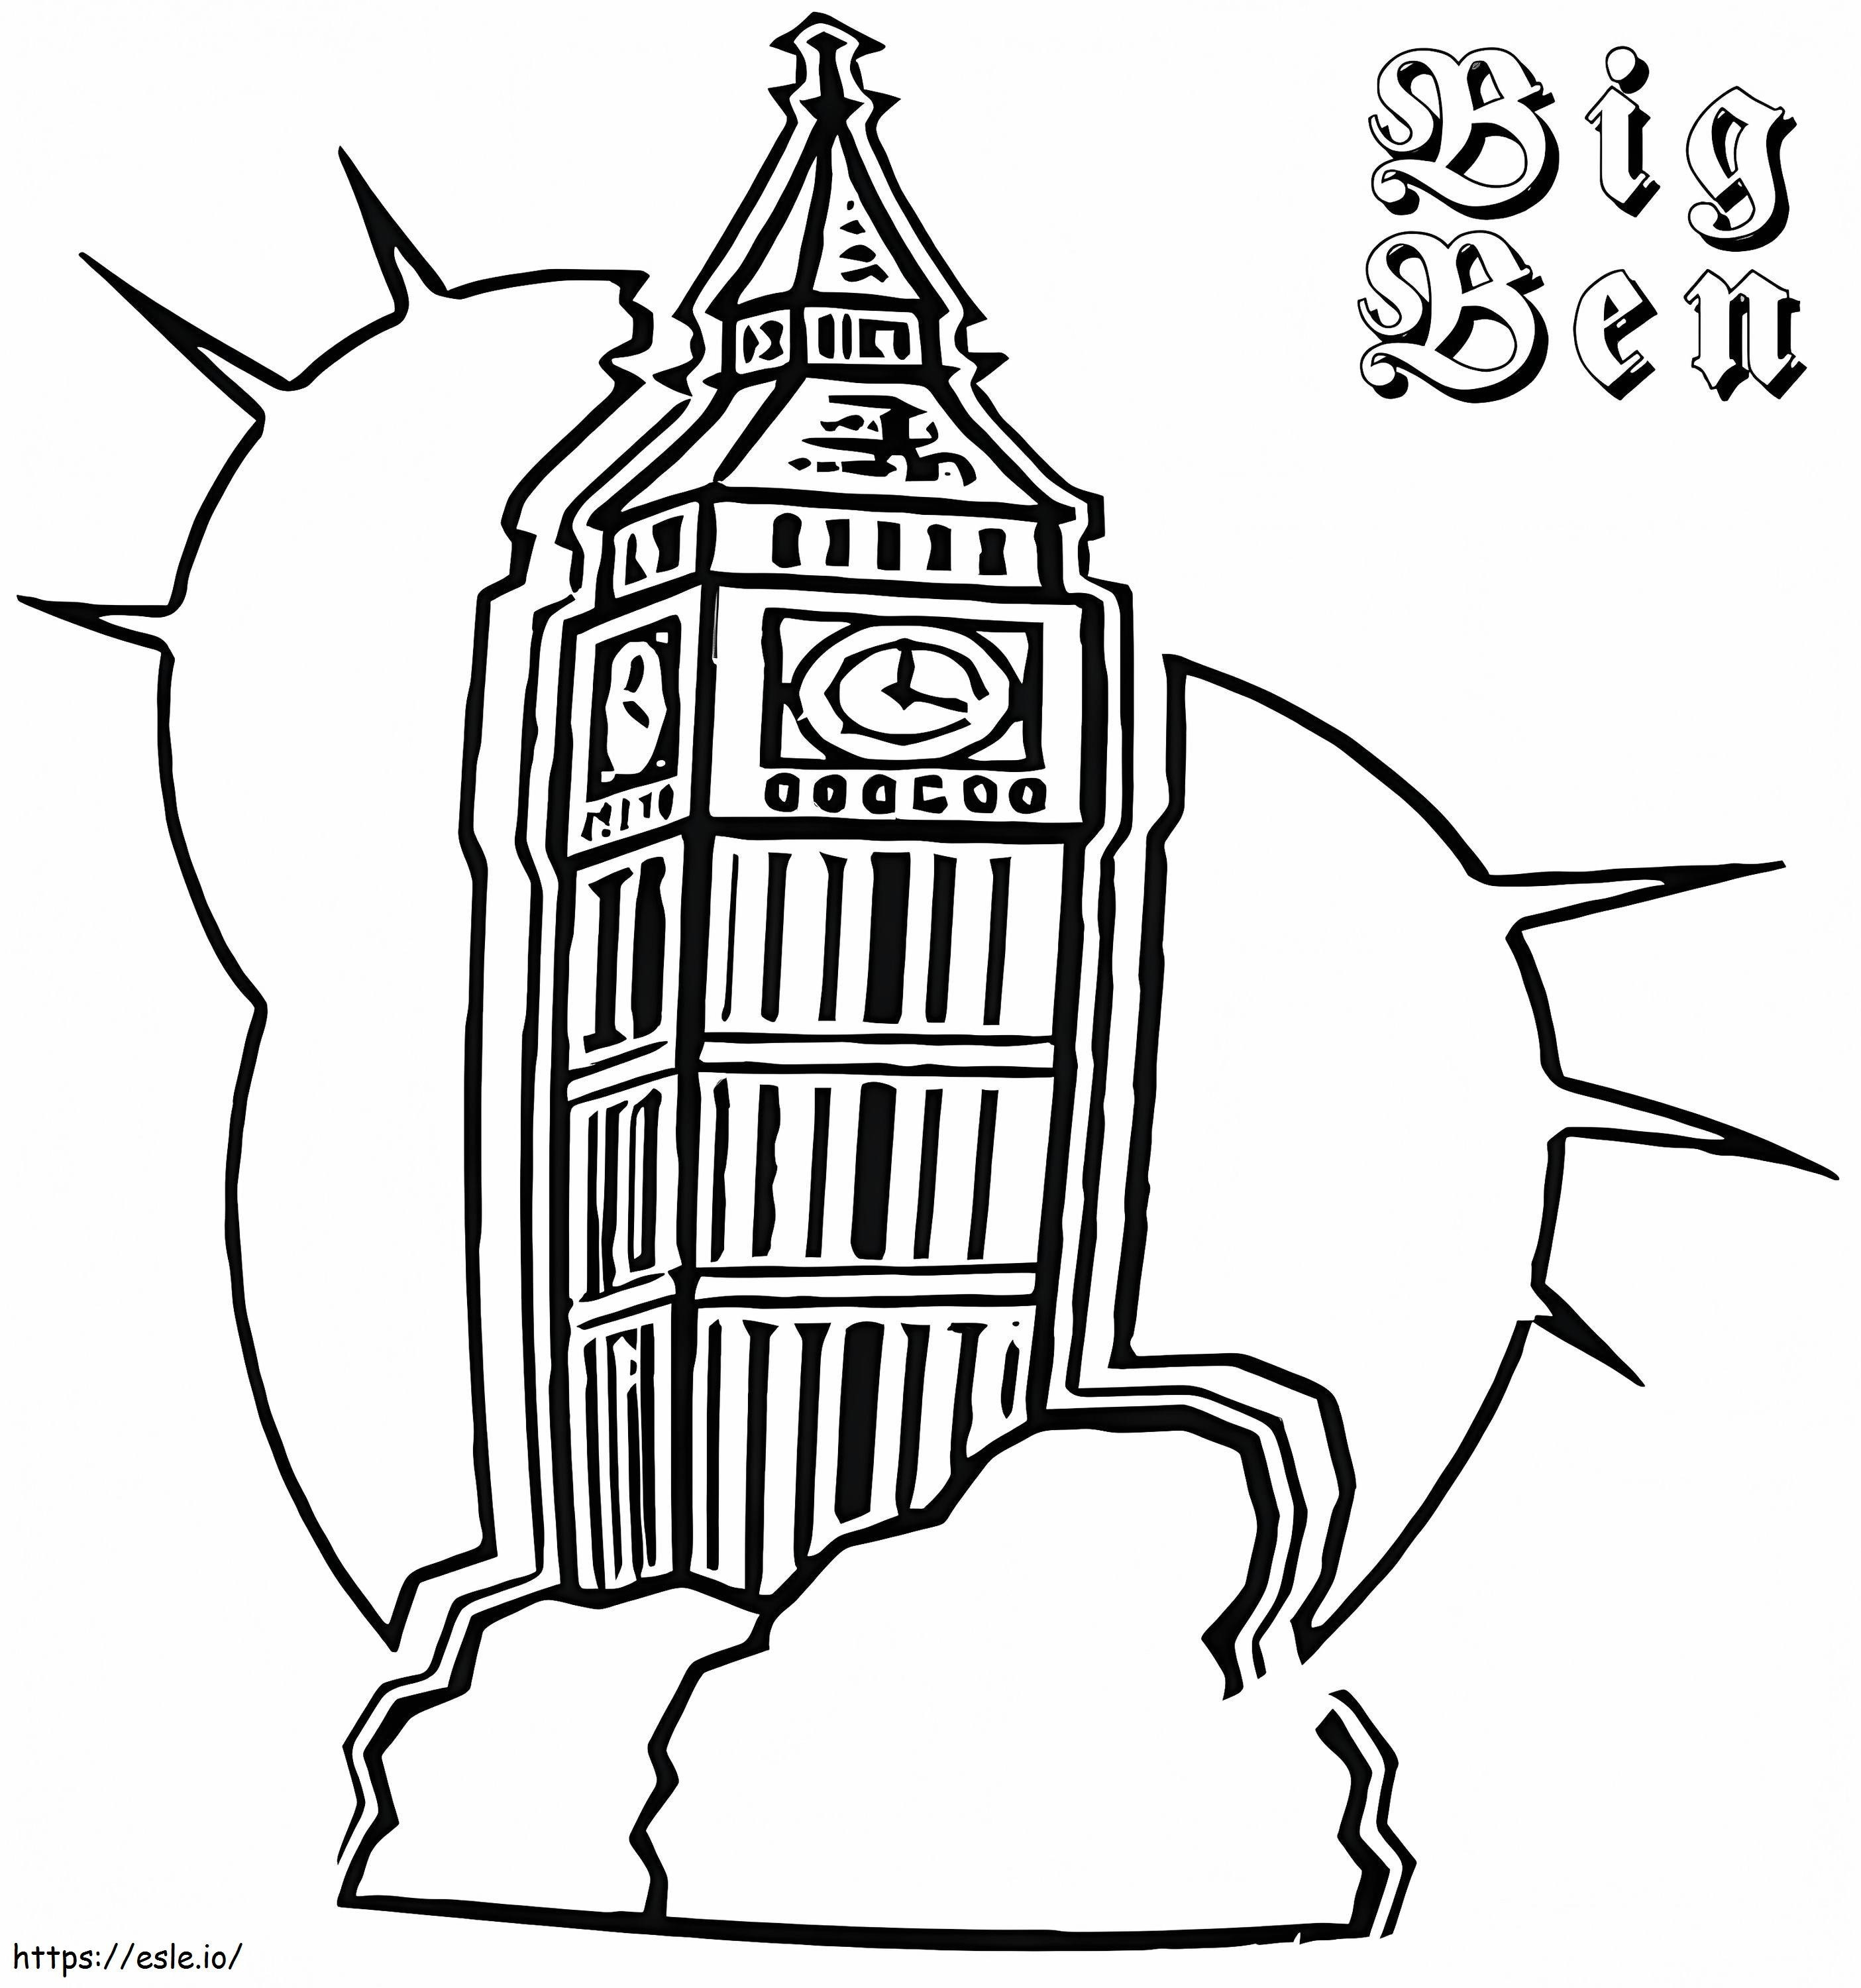 Big Ben do wydrukowania kolorowanka